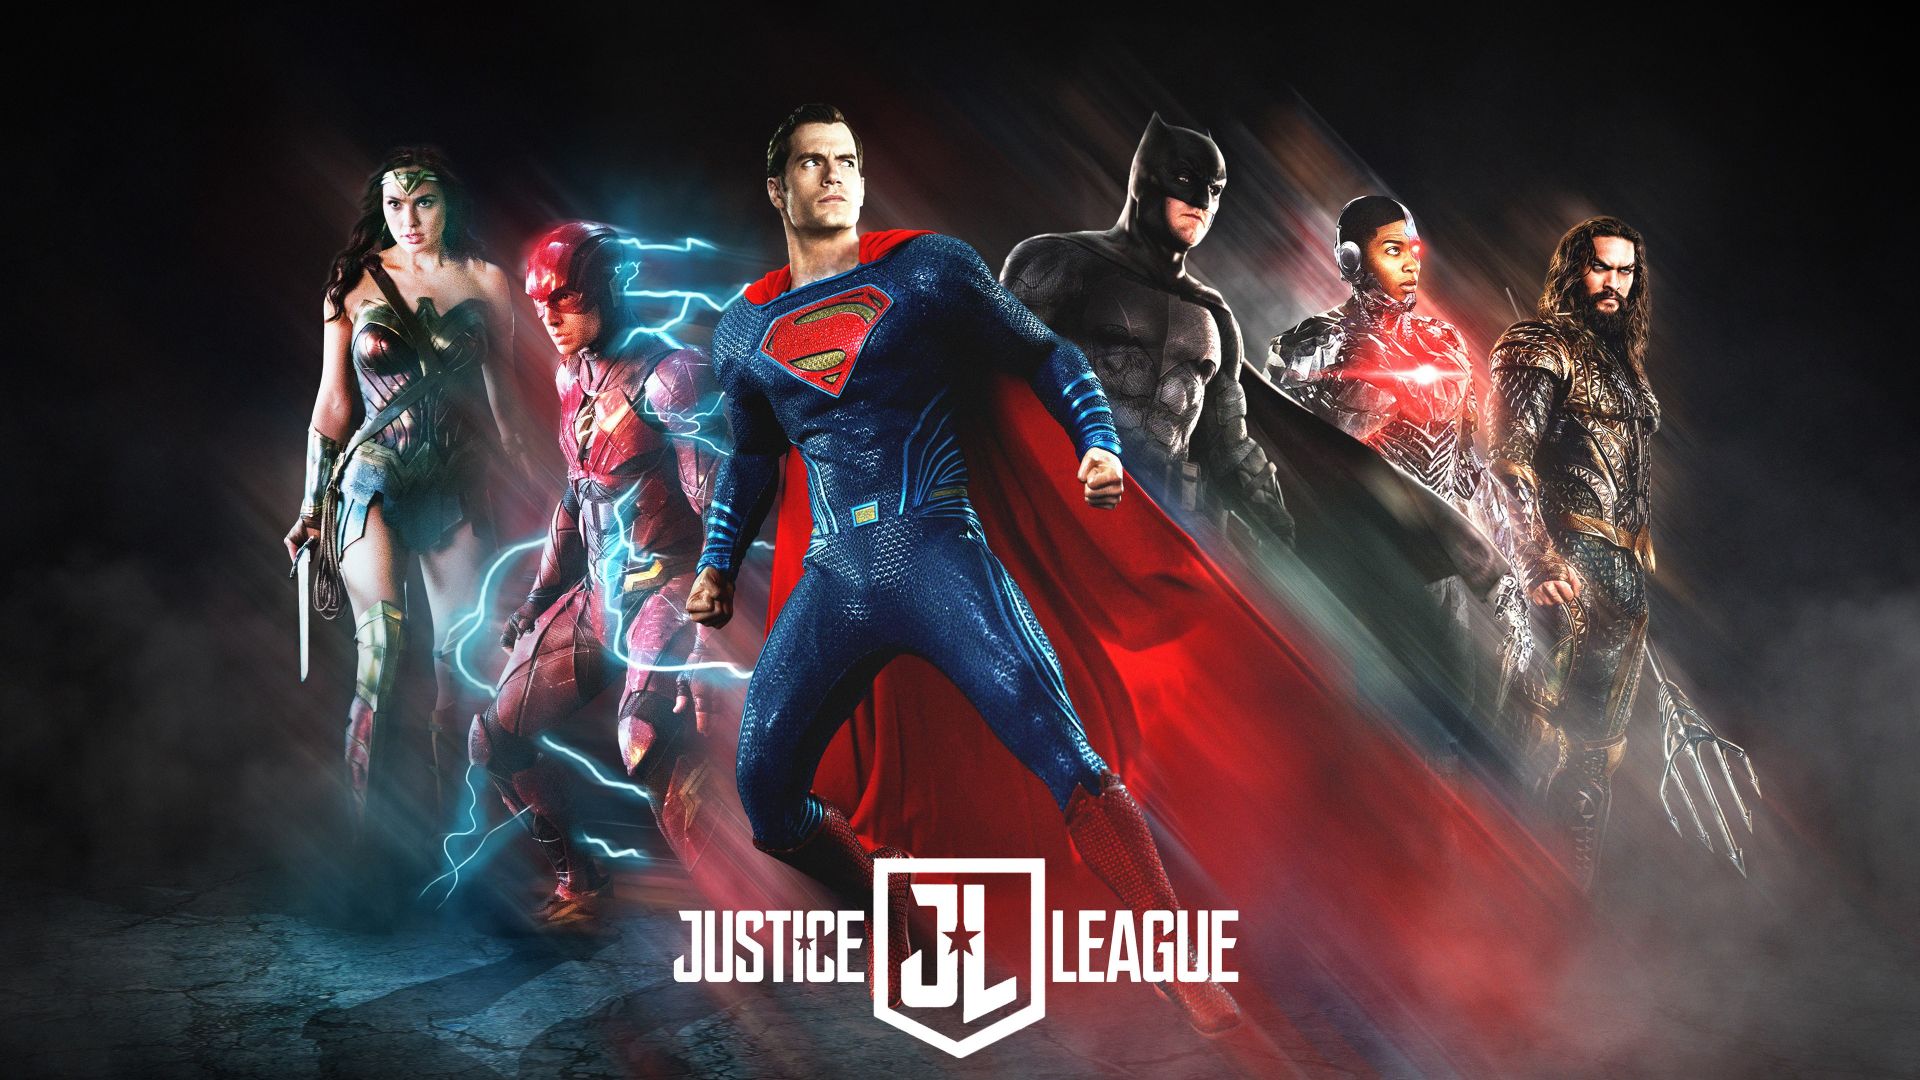 Wallpaper Justice league, fan art, poster, 4k